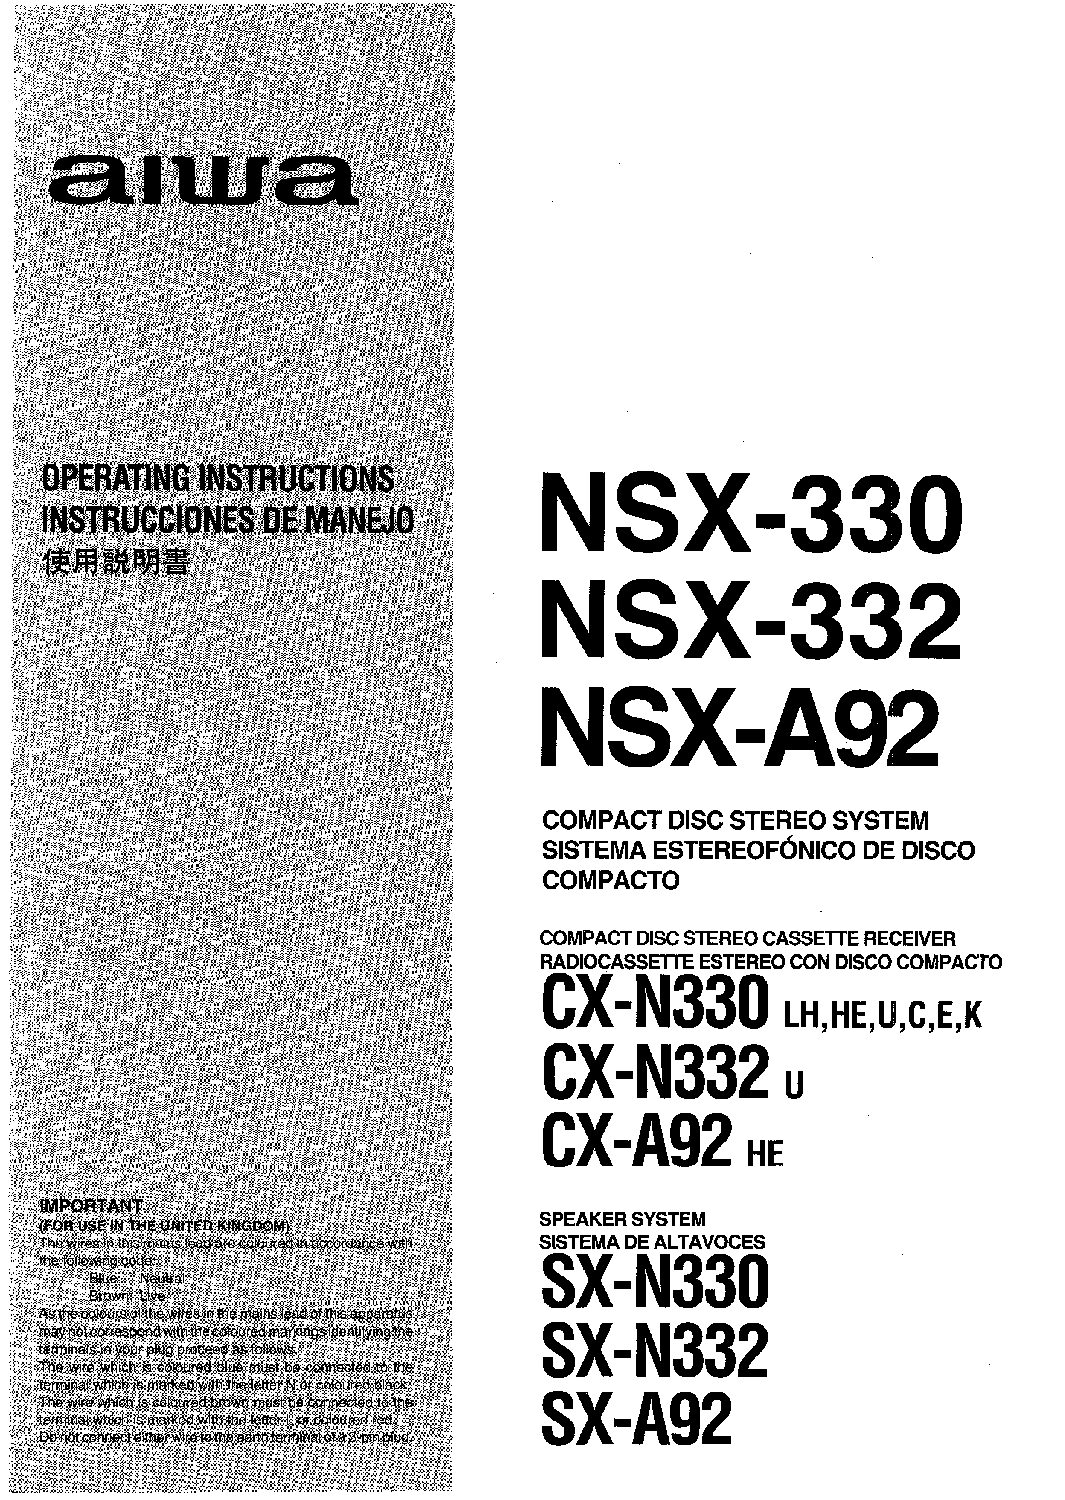 Aiwa NSX-330